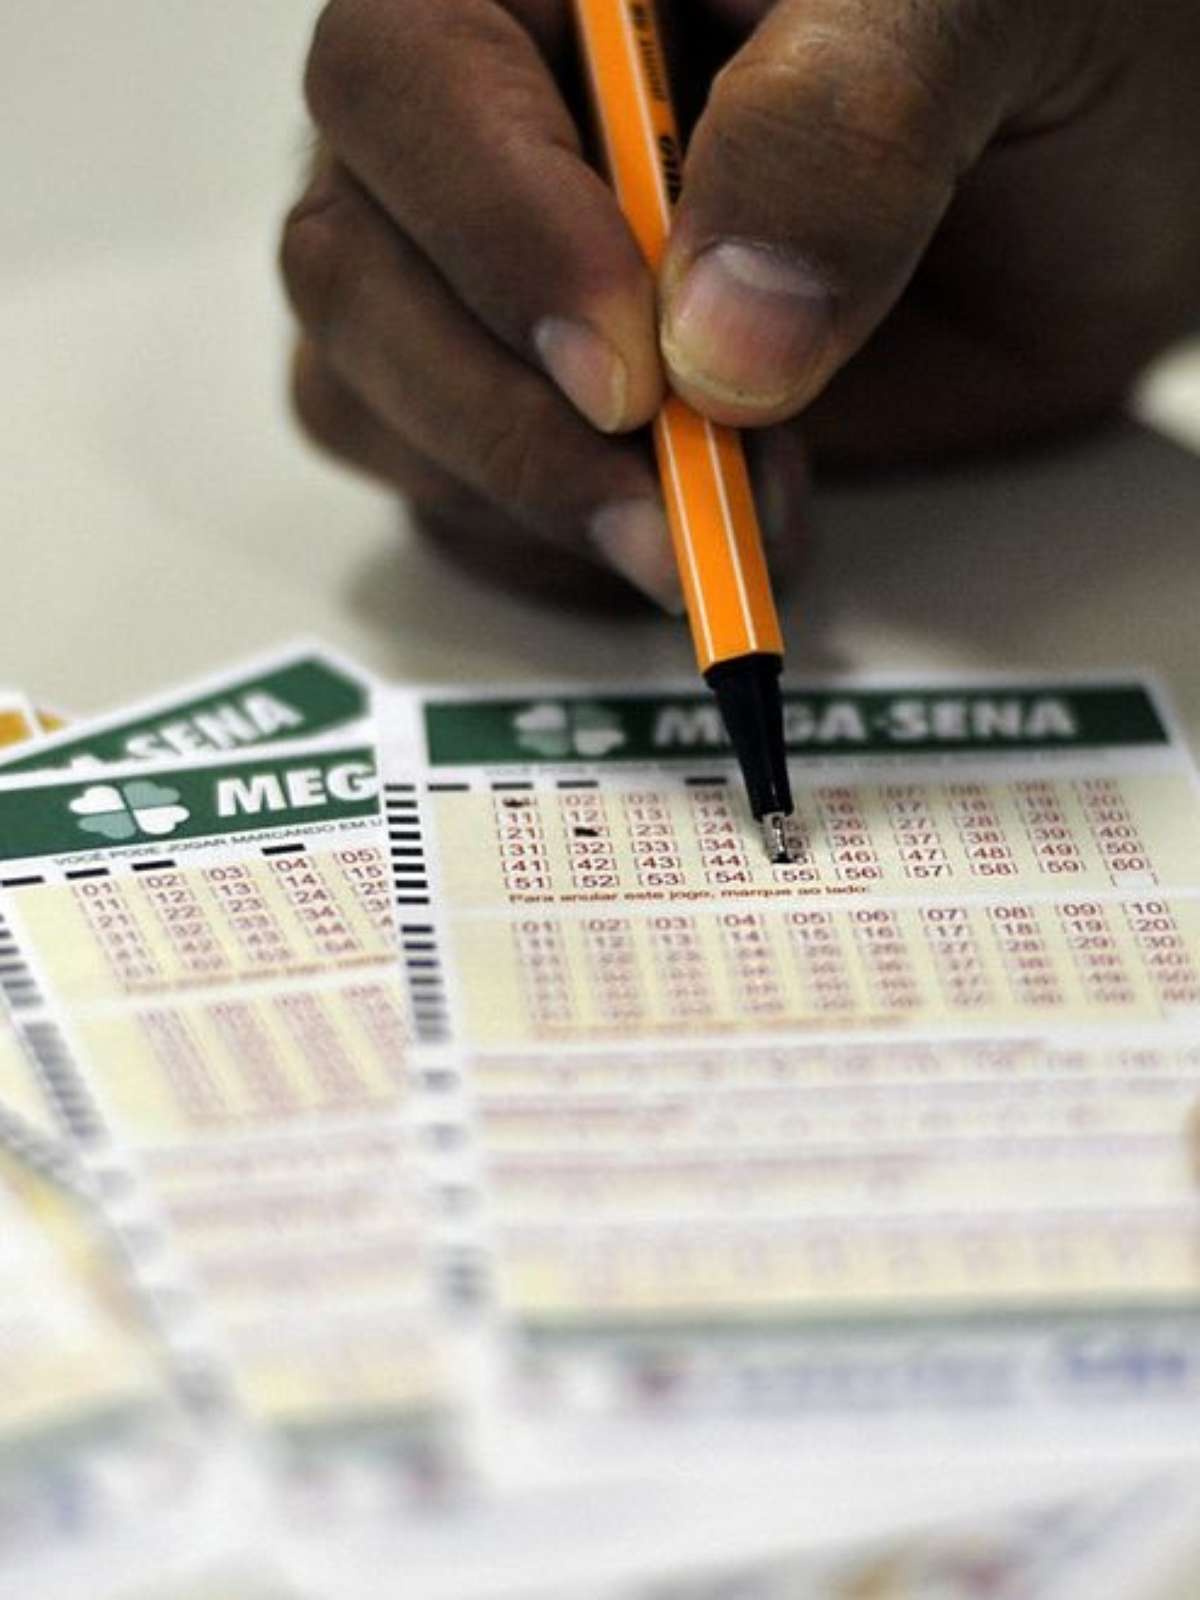 Apostador de Goiânia ganha quase R$ 3 mi na loteria e não busca prêmio -  Diario de Aparecida